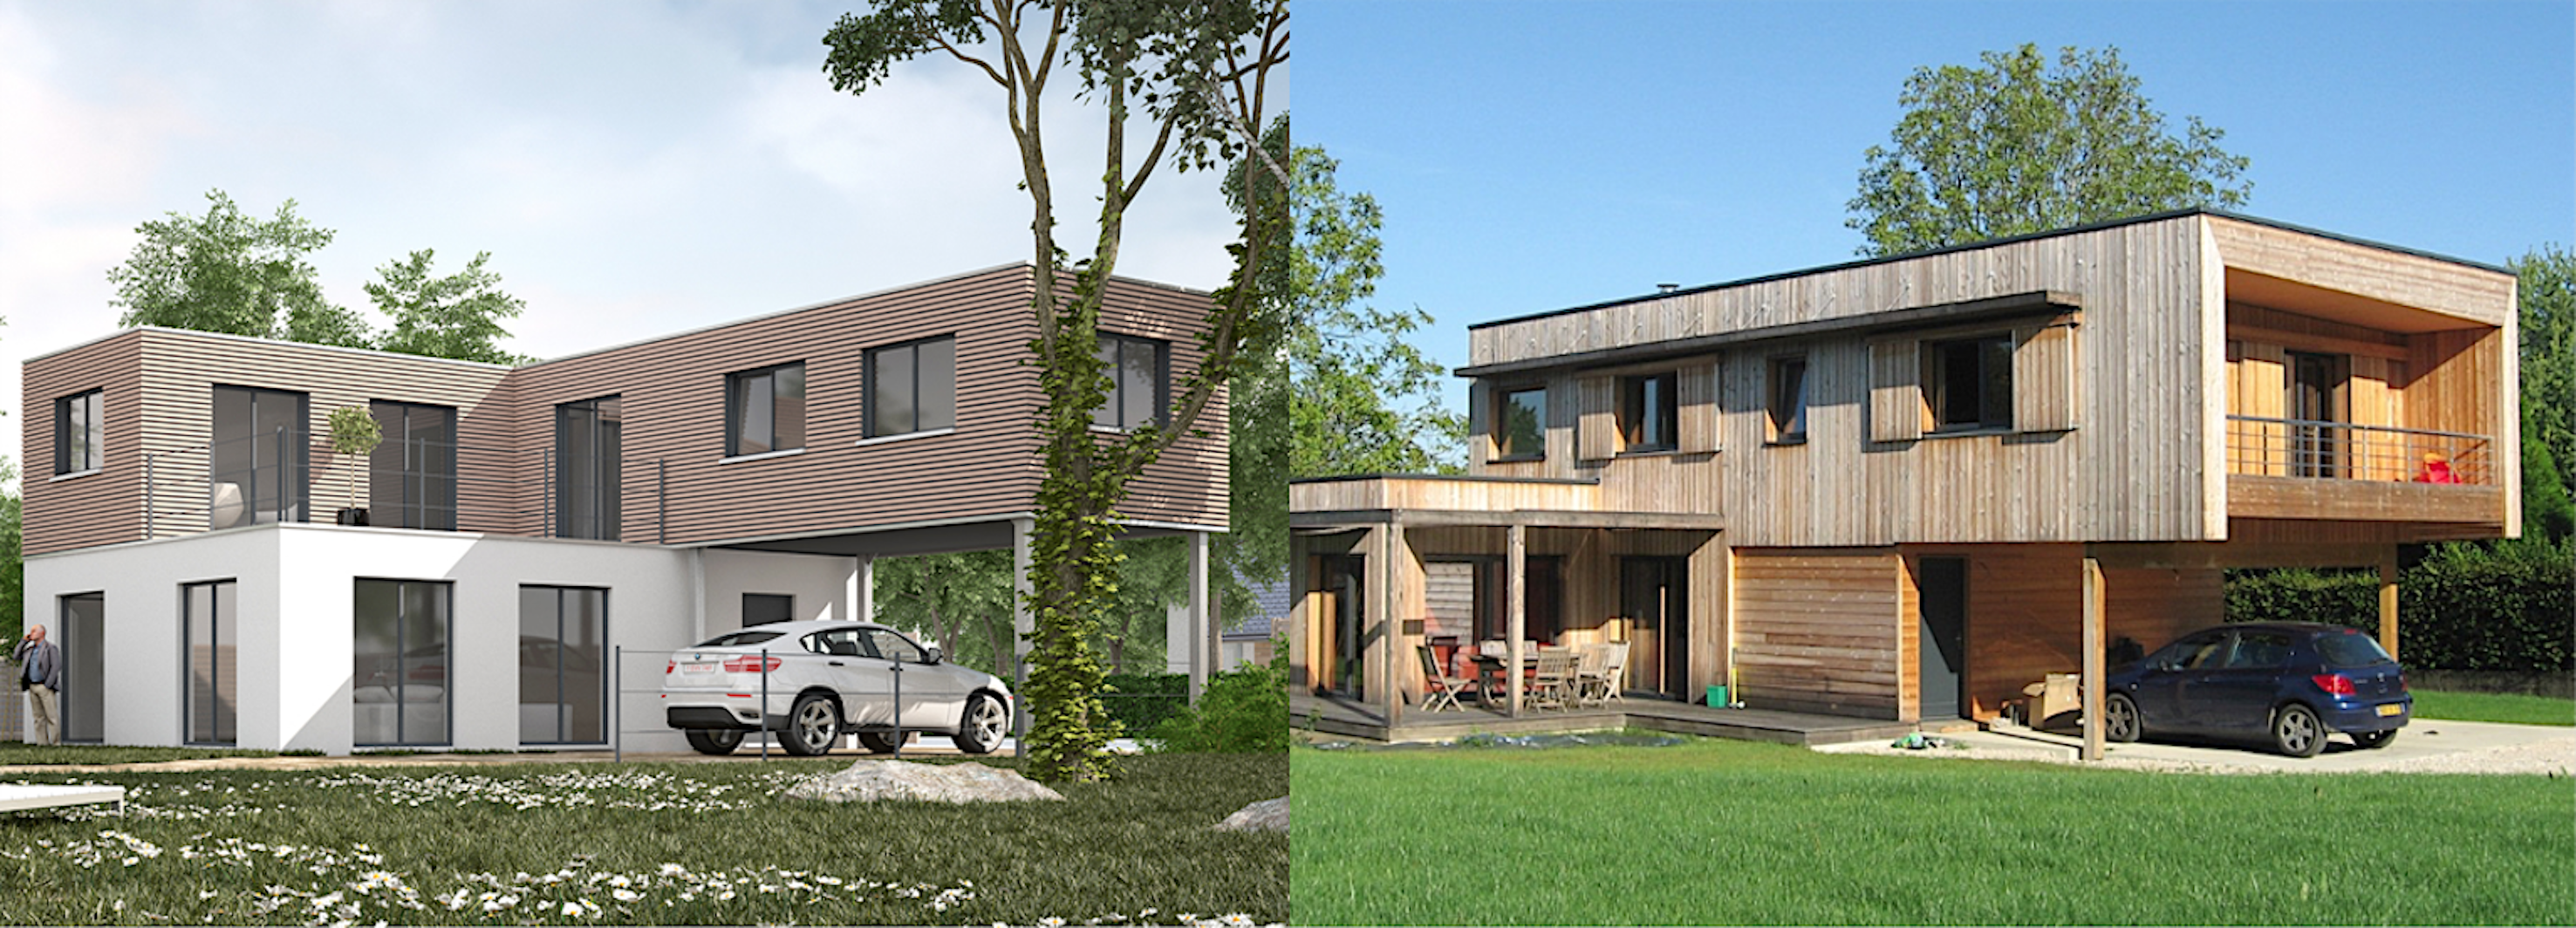 Maison modulaire « California » de Modulart, à gauche ; maison bioclimatique de Arborès Architecture, à droite. © Modulart, Arborès Architecture